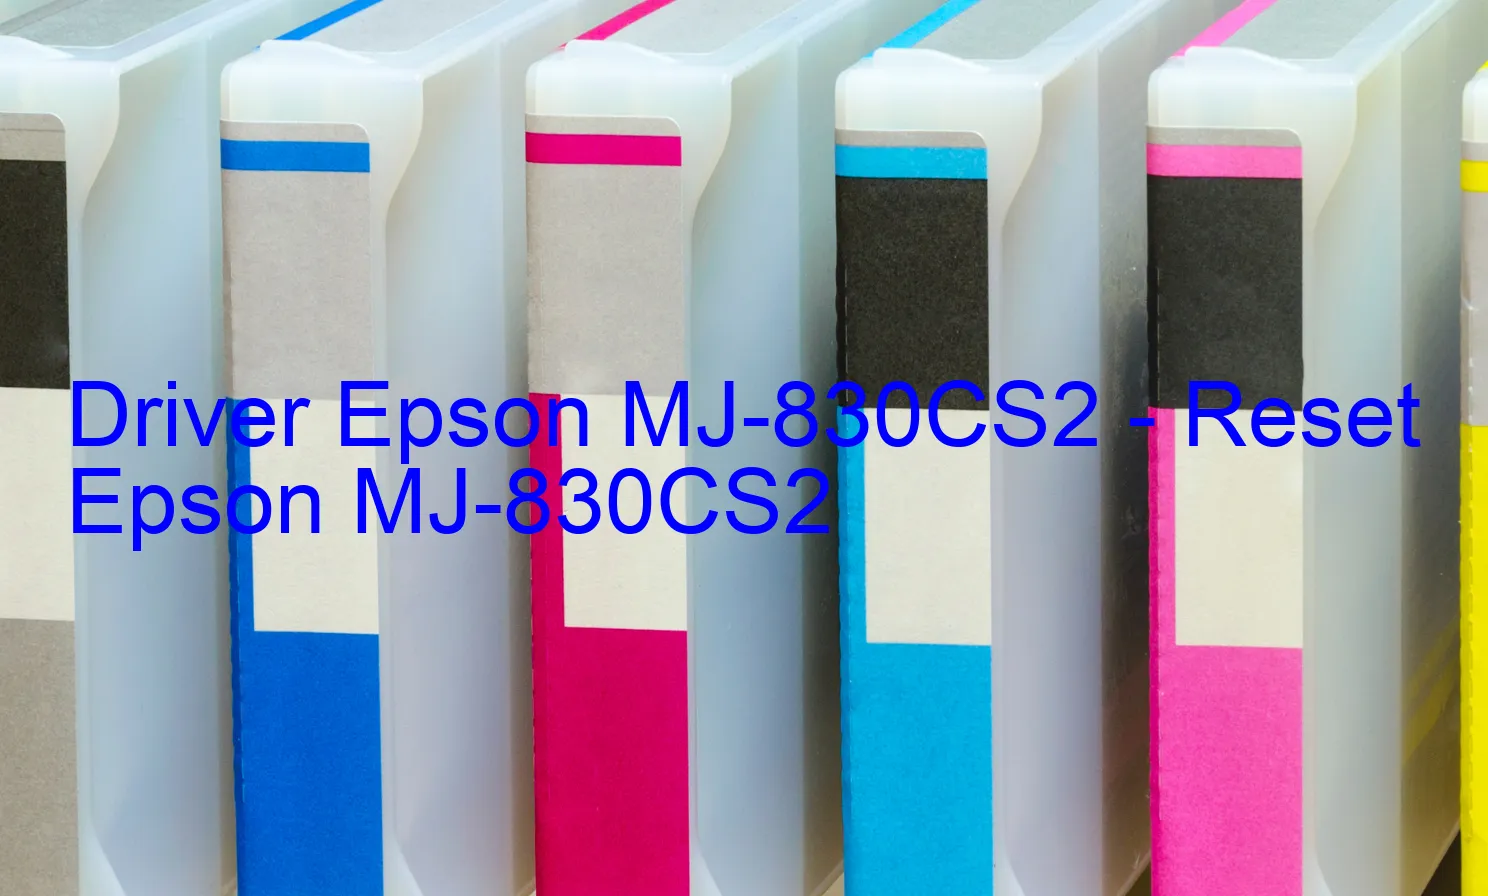 Epson MJ-830CS2のドライバー、Epson MJ-830CS2のリセットソフトウェア